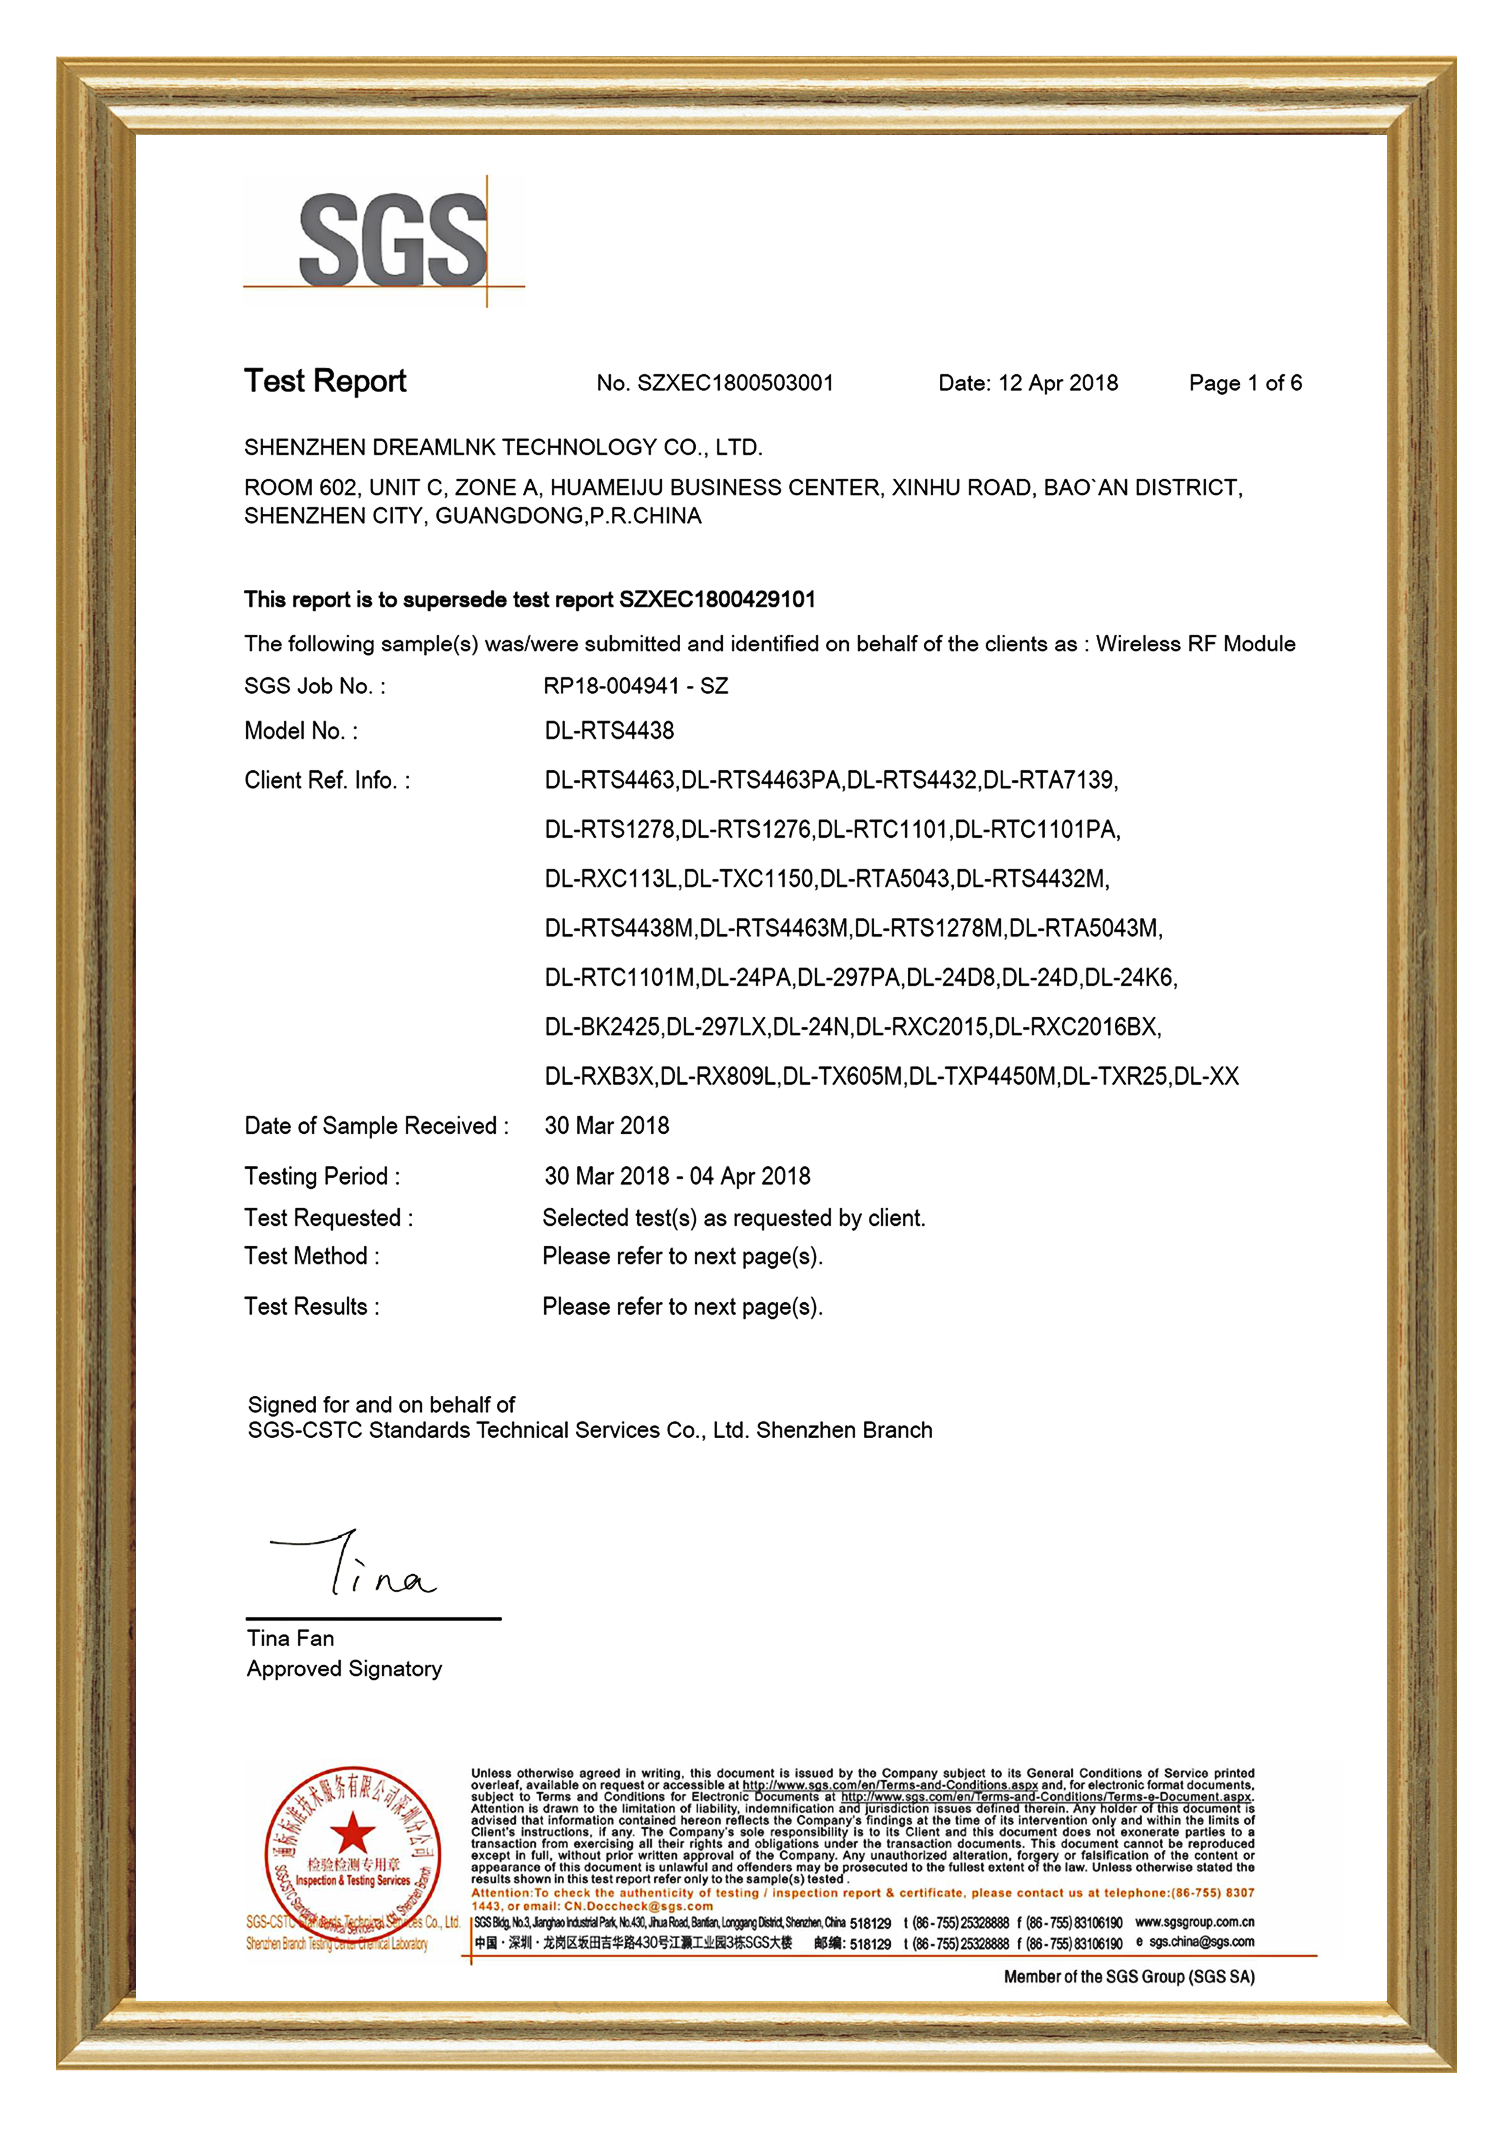 SGS Certificate - DreamLNK